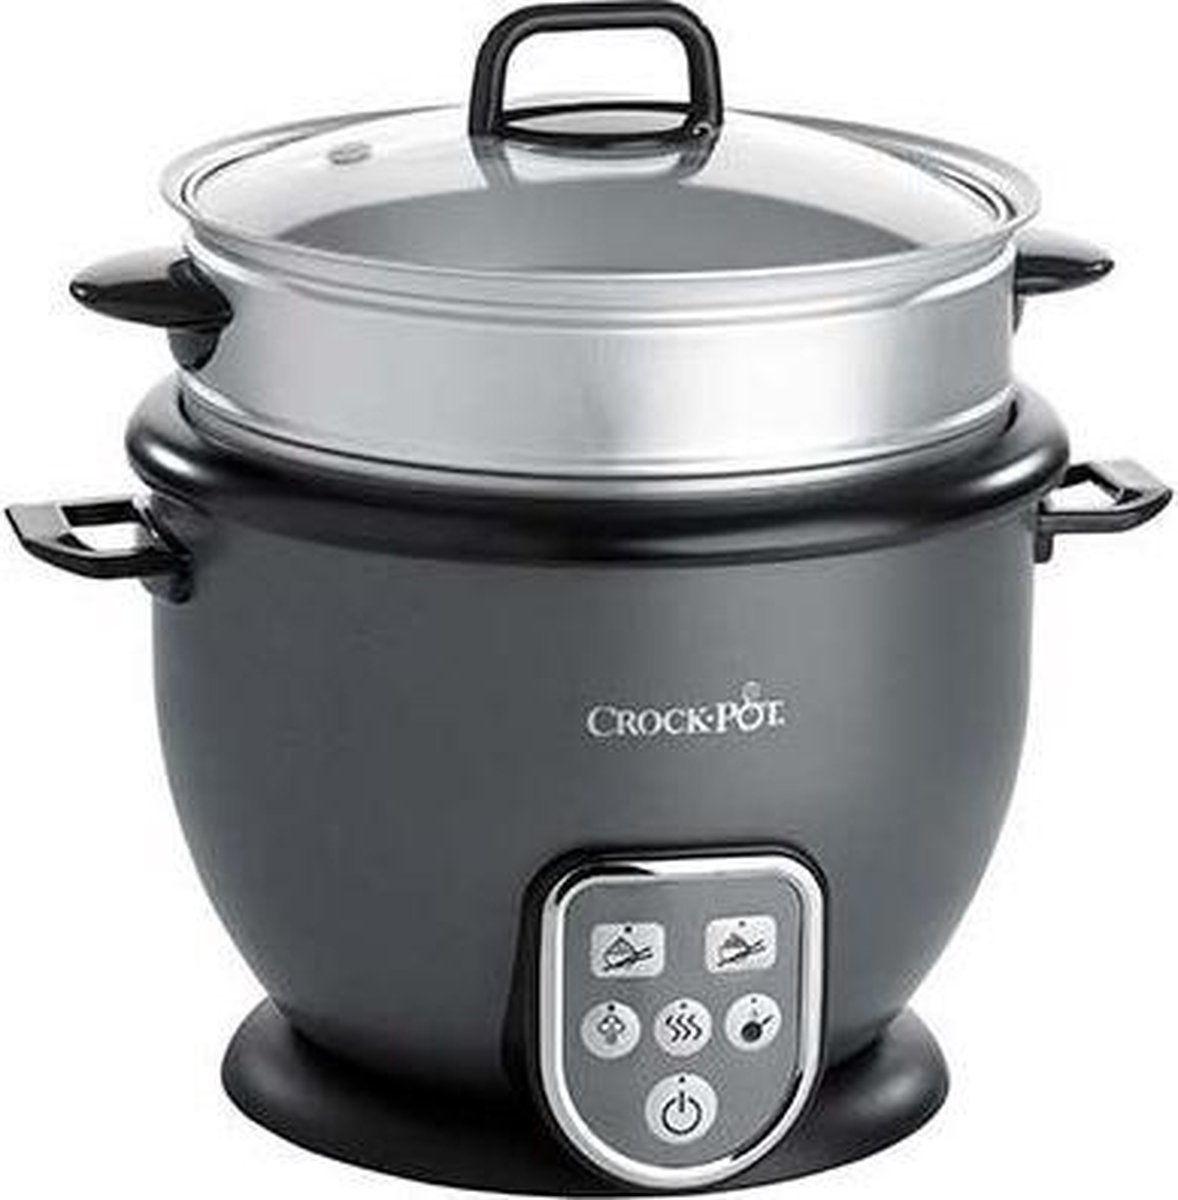 Crock-Pot 1.8L Saute Rice Cooker Black 